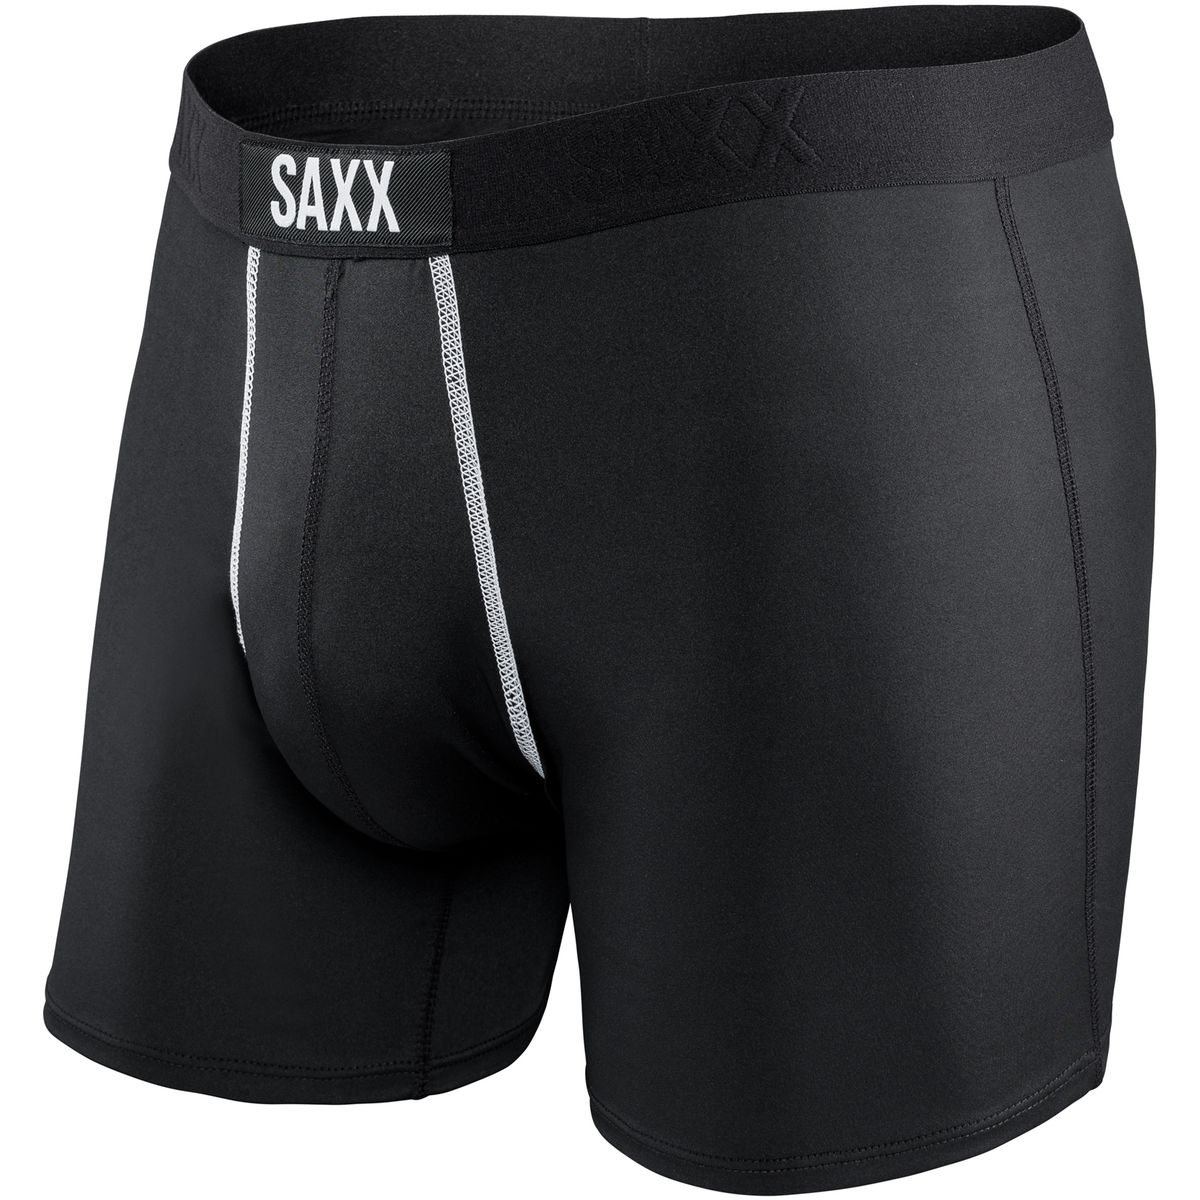 SAXX 24-Seven Boxer Brief - Men's - Clothing